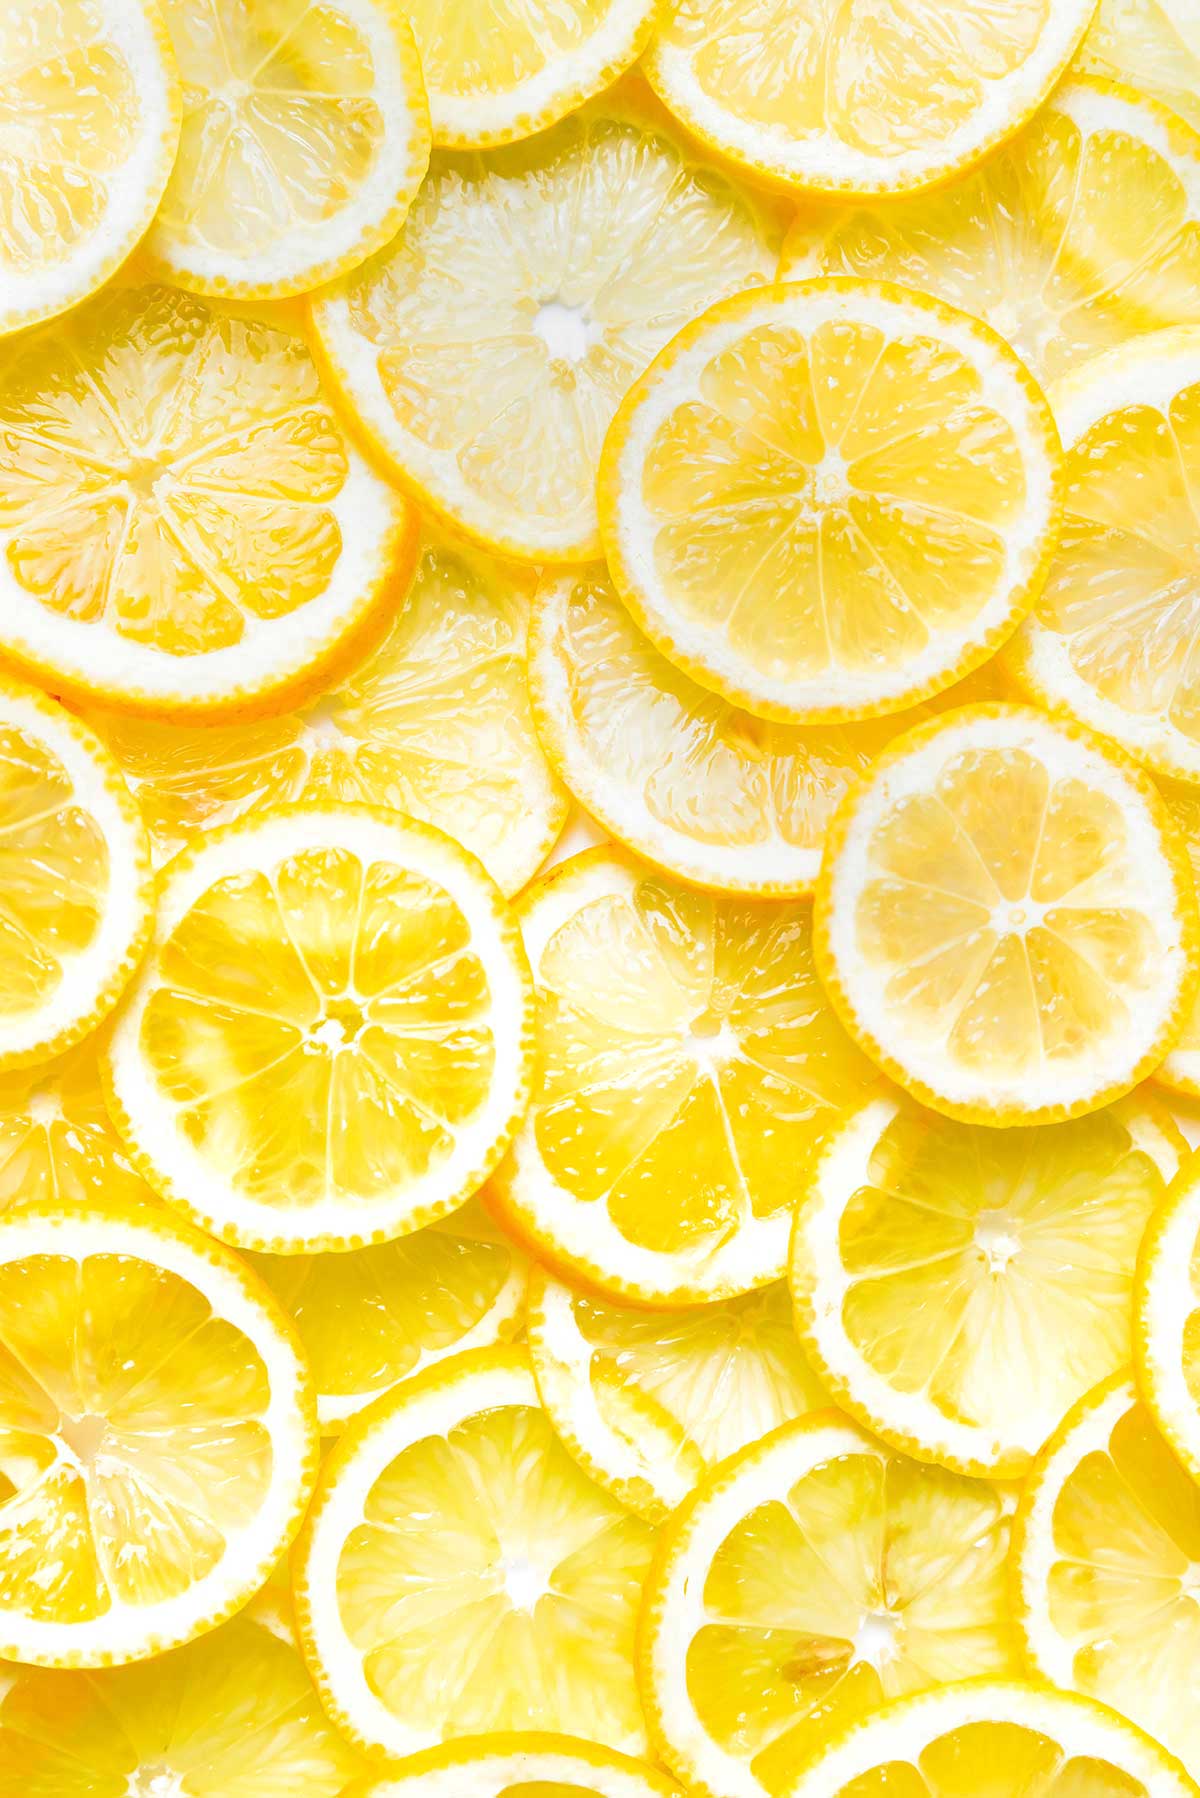 Lemons 101: Varieties, Storage